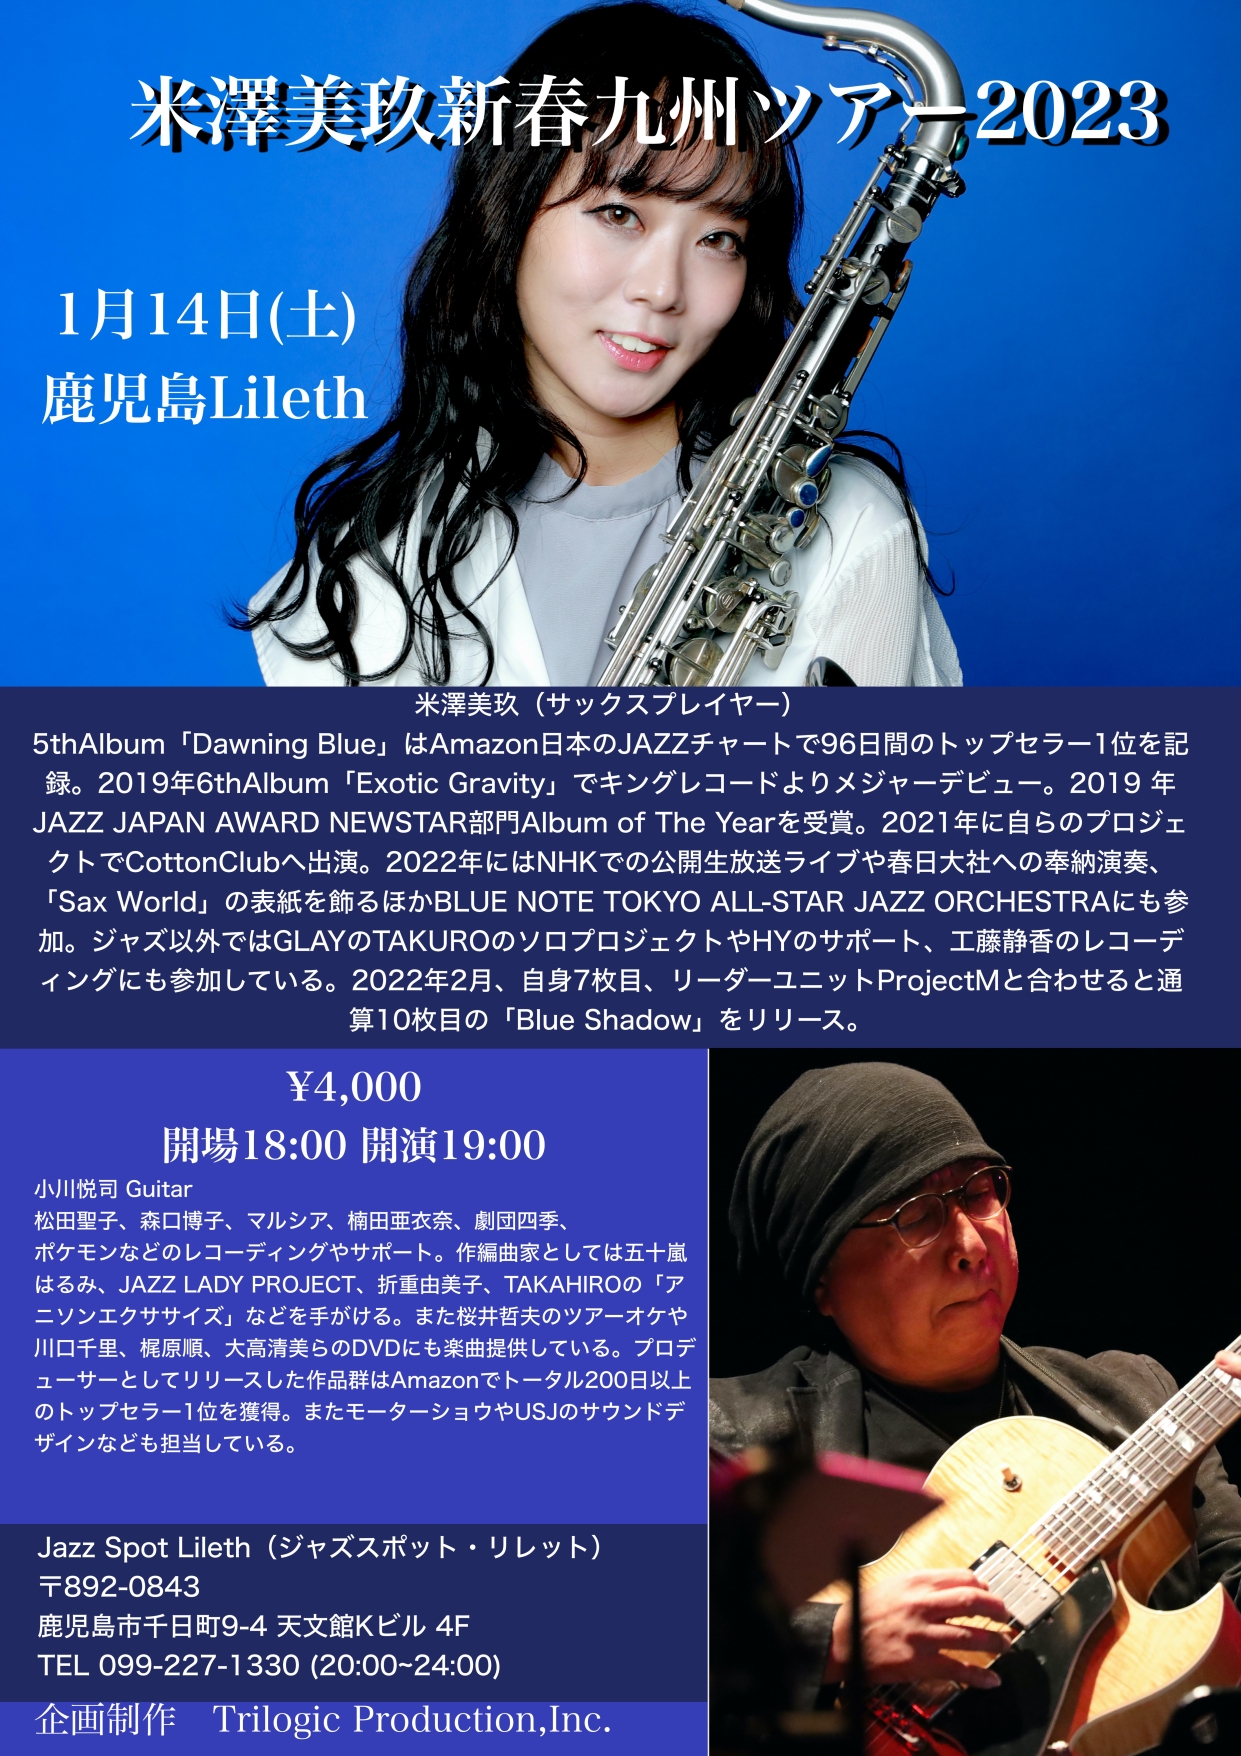 【ライブ告知】1/14㊏ 米澤美玖(sax) with 小川悦司(guitar) 新春ライブ